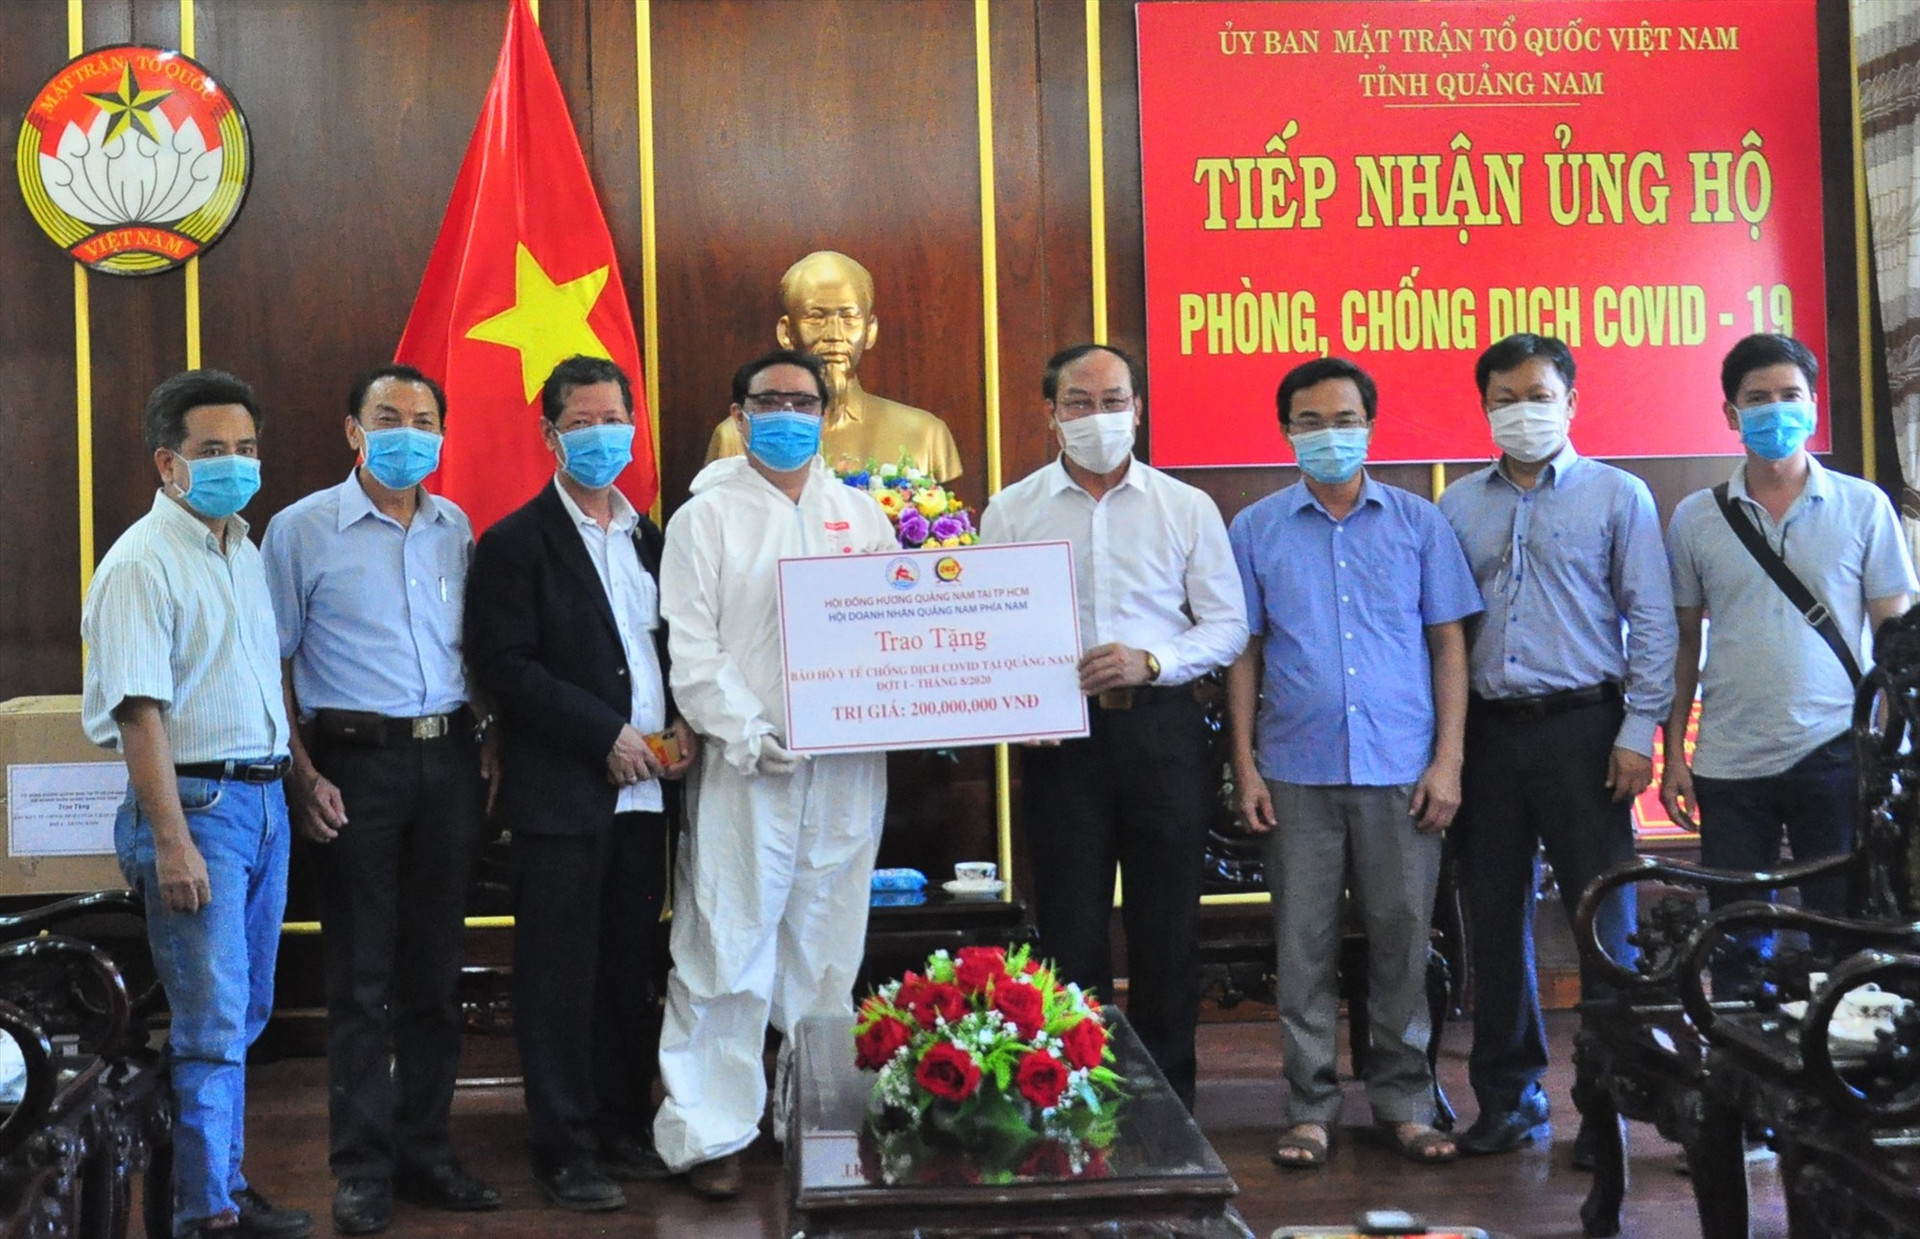 Hội đồng hương Quảng Nam tại TP.Hồ Chí Minh và Hội Doanh nhân Quảng Nam phía Nam trao ủng hộ vật tư y tế cho Quảng Nam chống dịch. Ảnh: VINH ANH